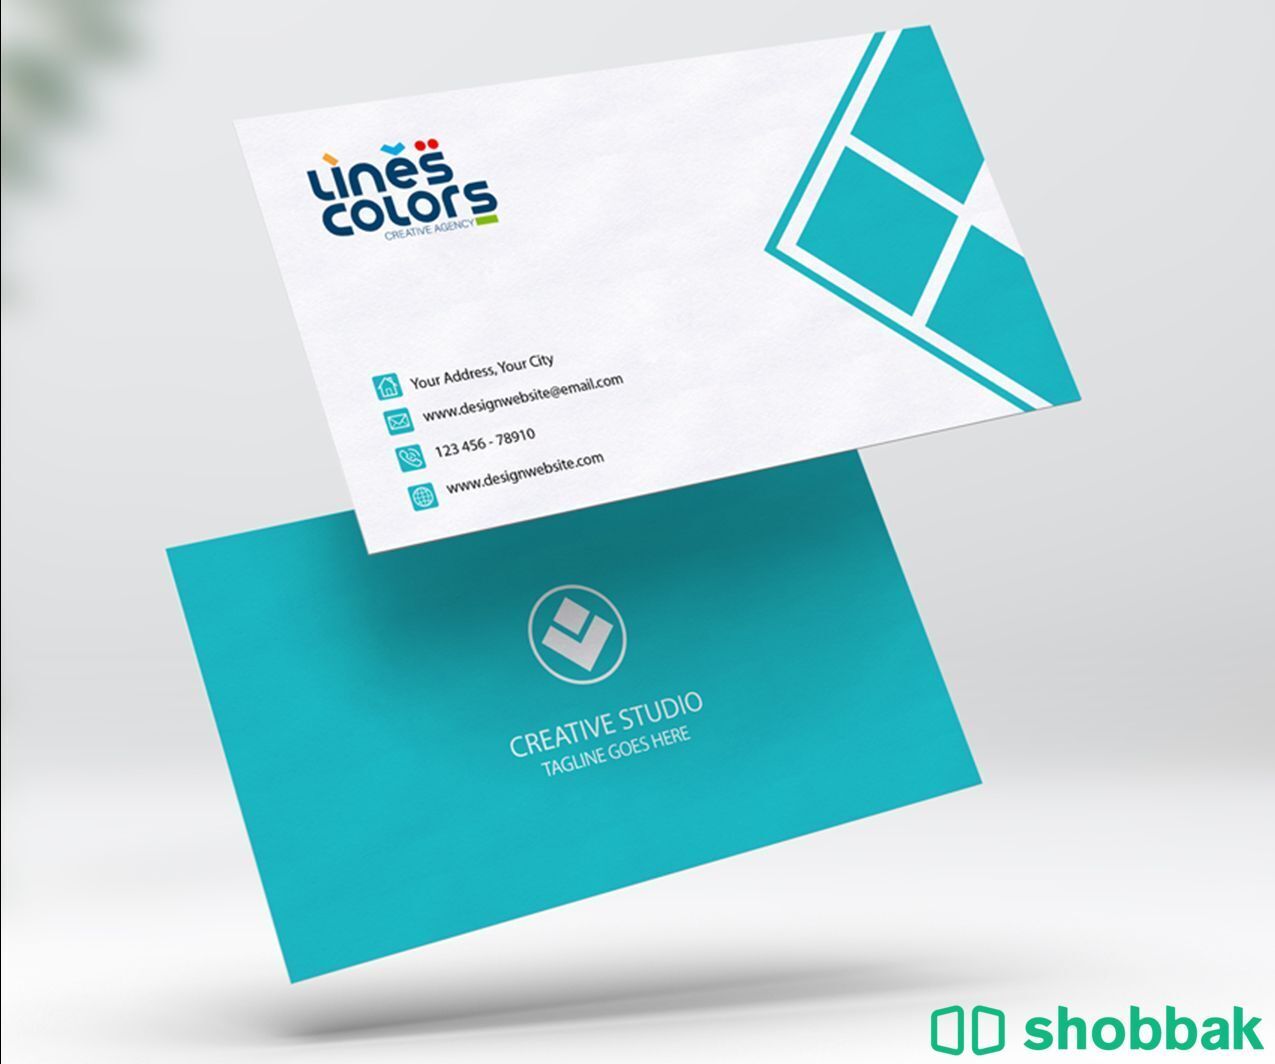 تصميم وطباعة وكل ما يخص الدعاية والاعلان Shobbak Saudi Arabia